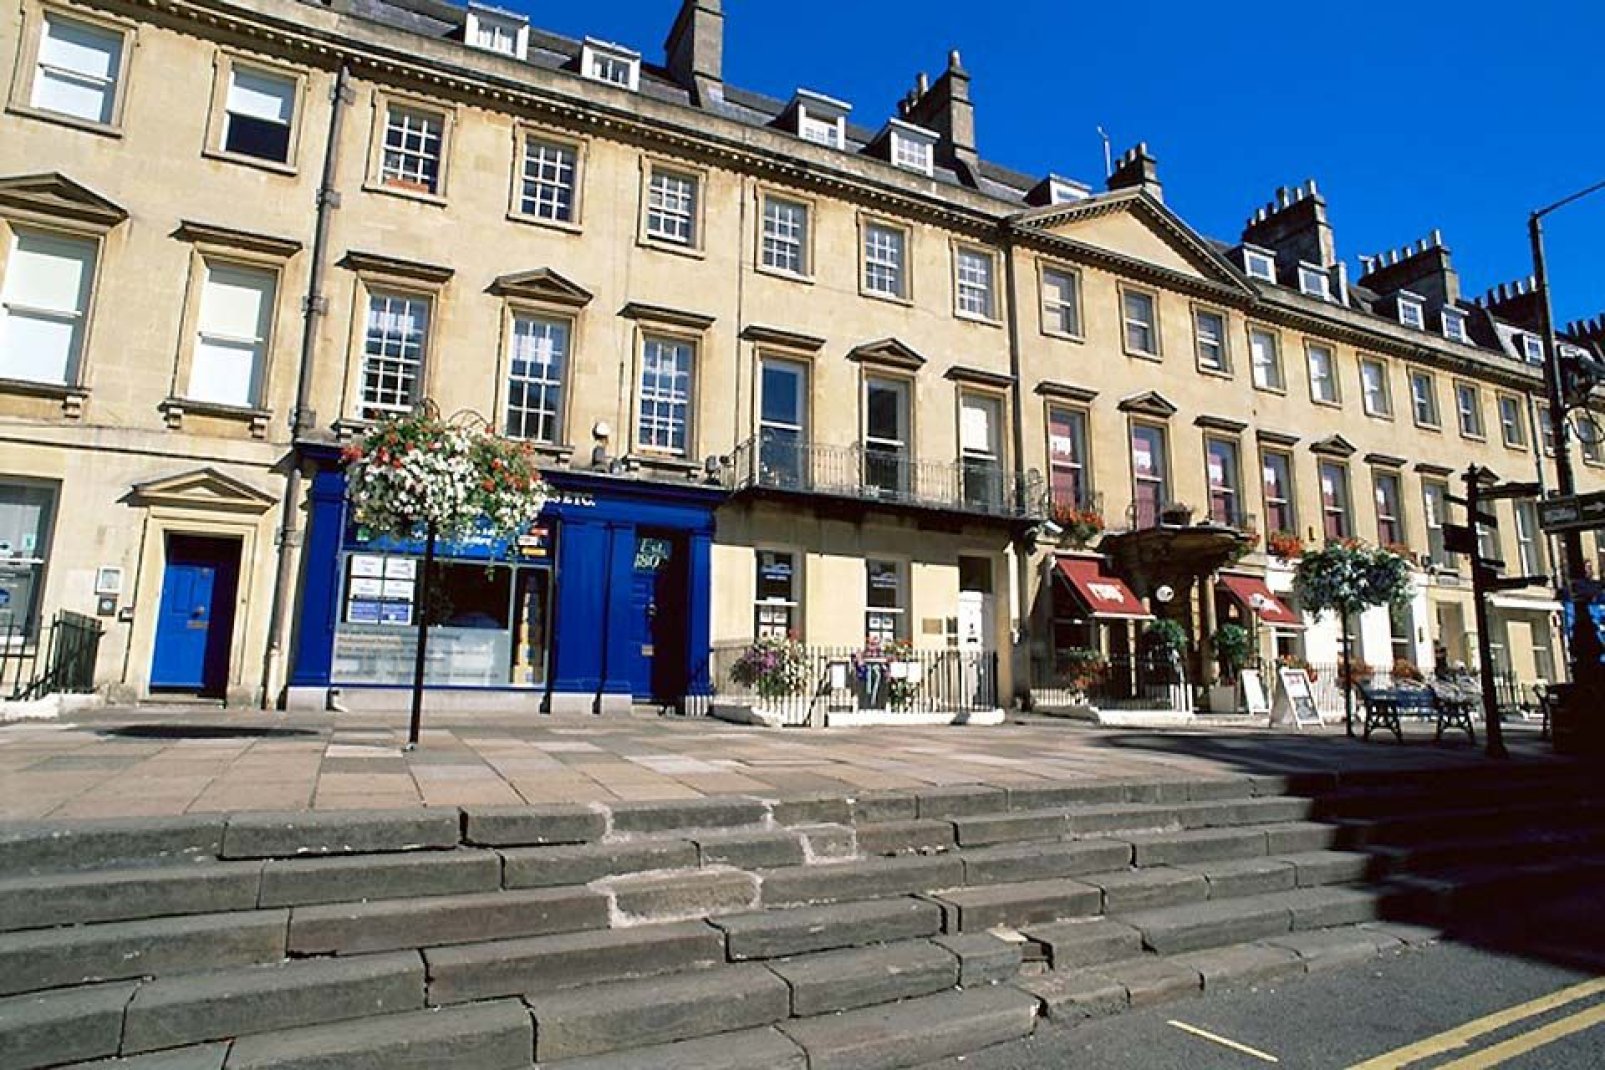 Case contigue con ristorante in terrazza nel centro di Bath.